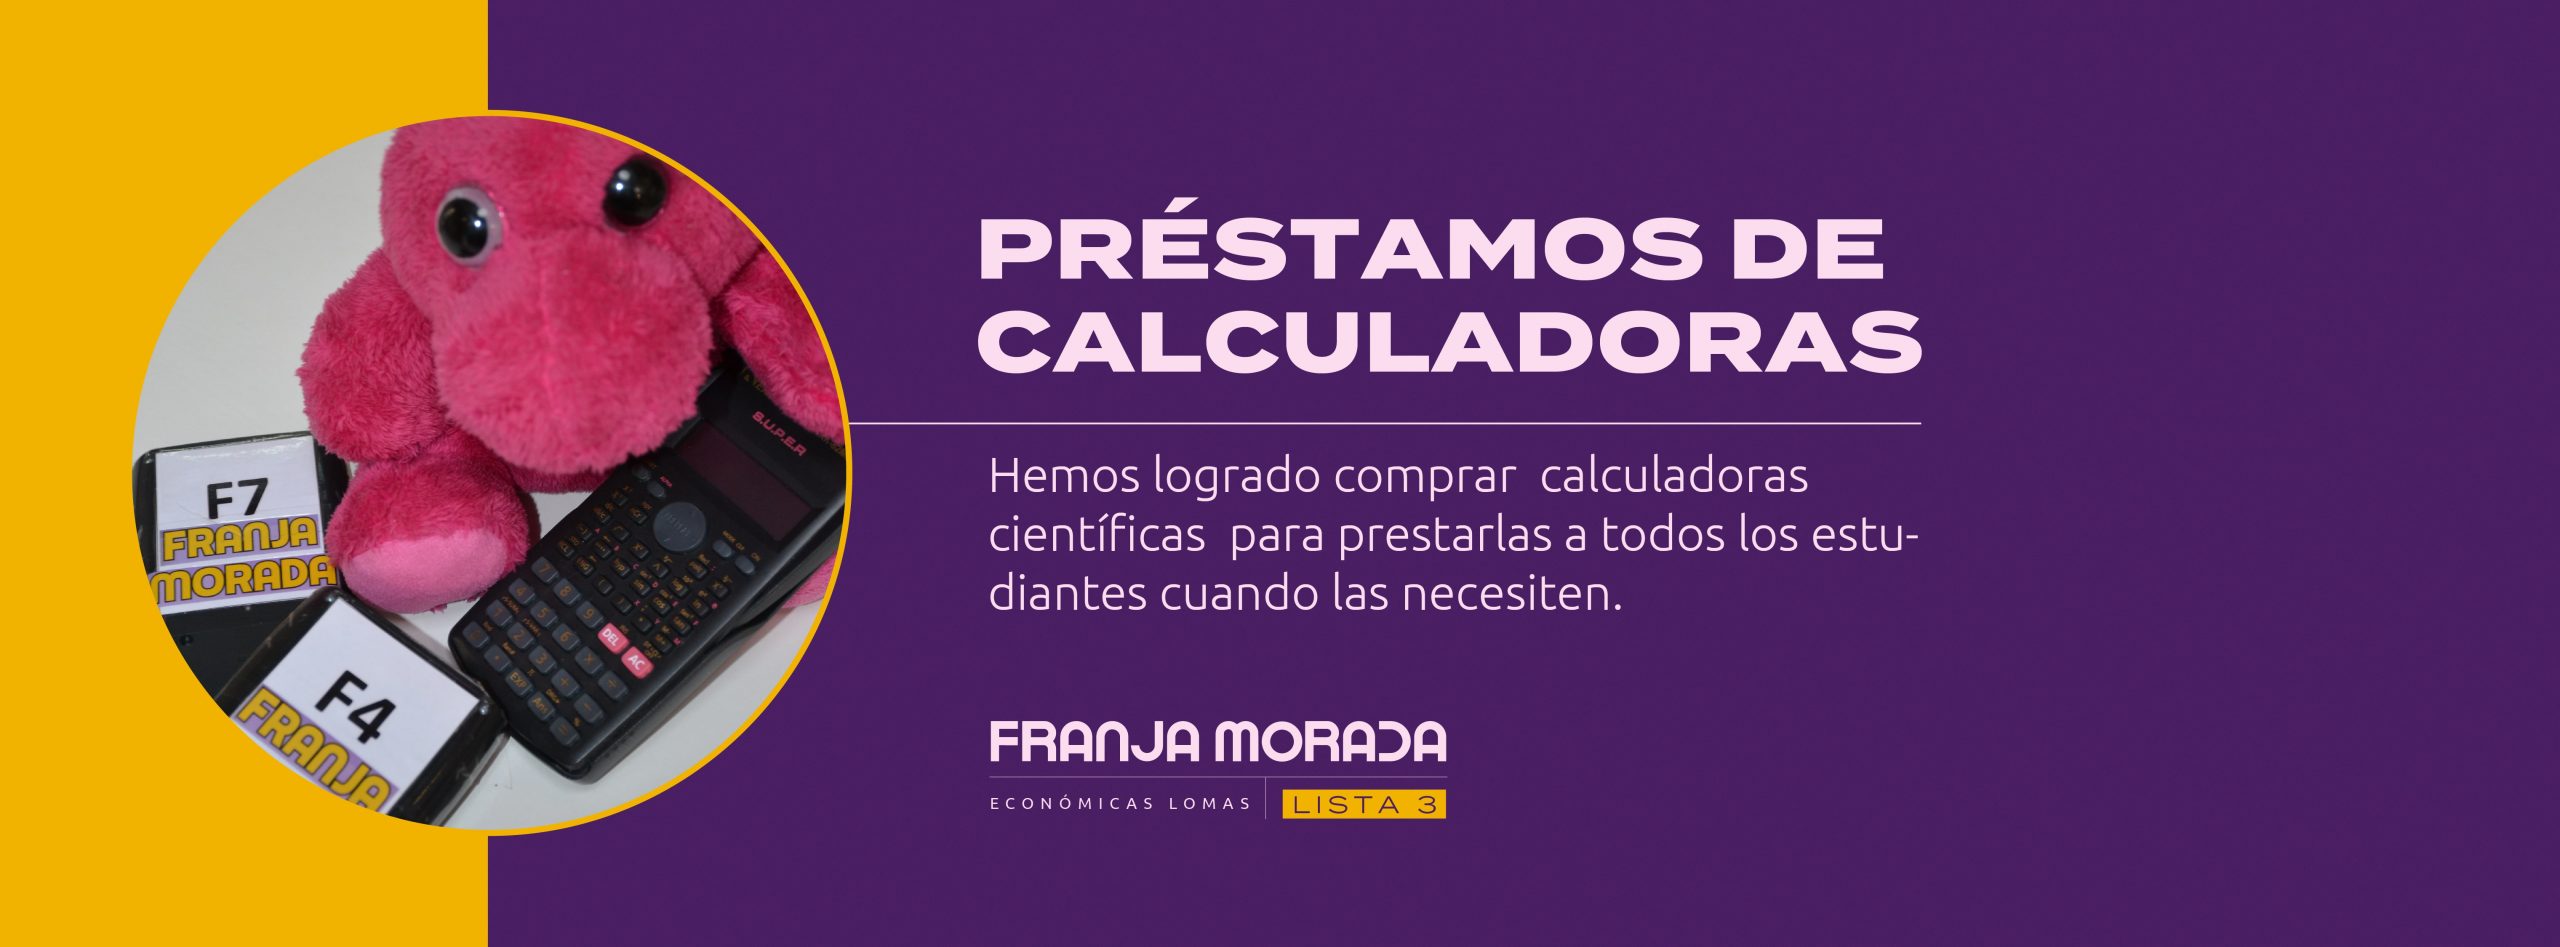 calculadoras-02-min